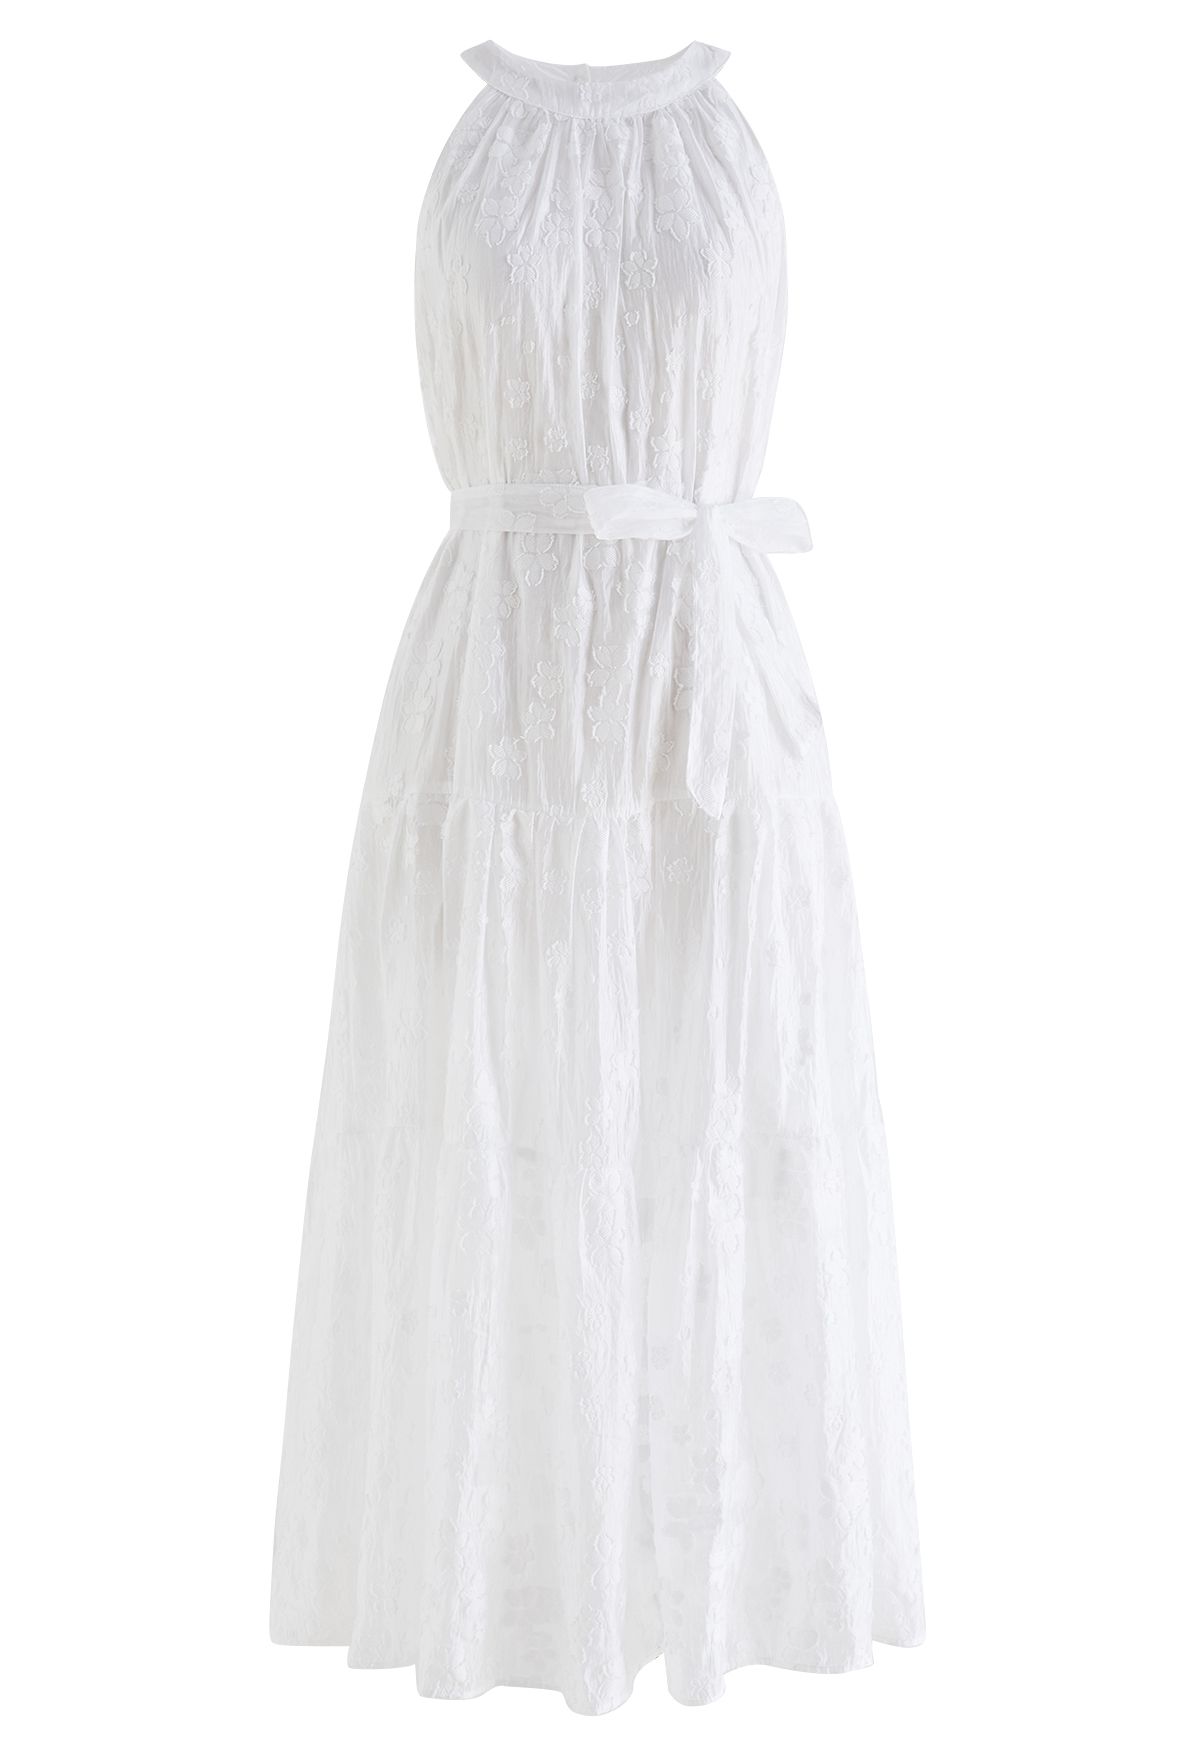 Breezy Floral Jacquard Halter Neck Midi Dress in White